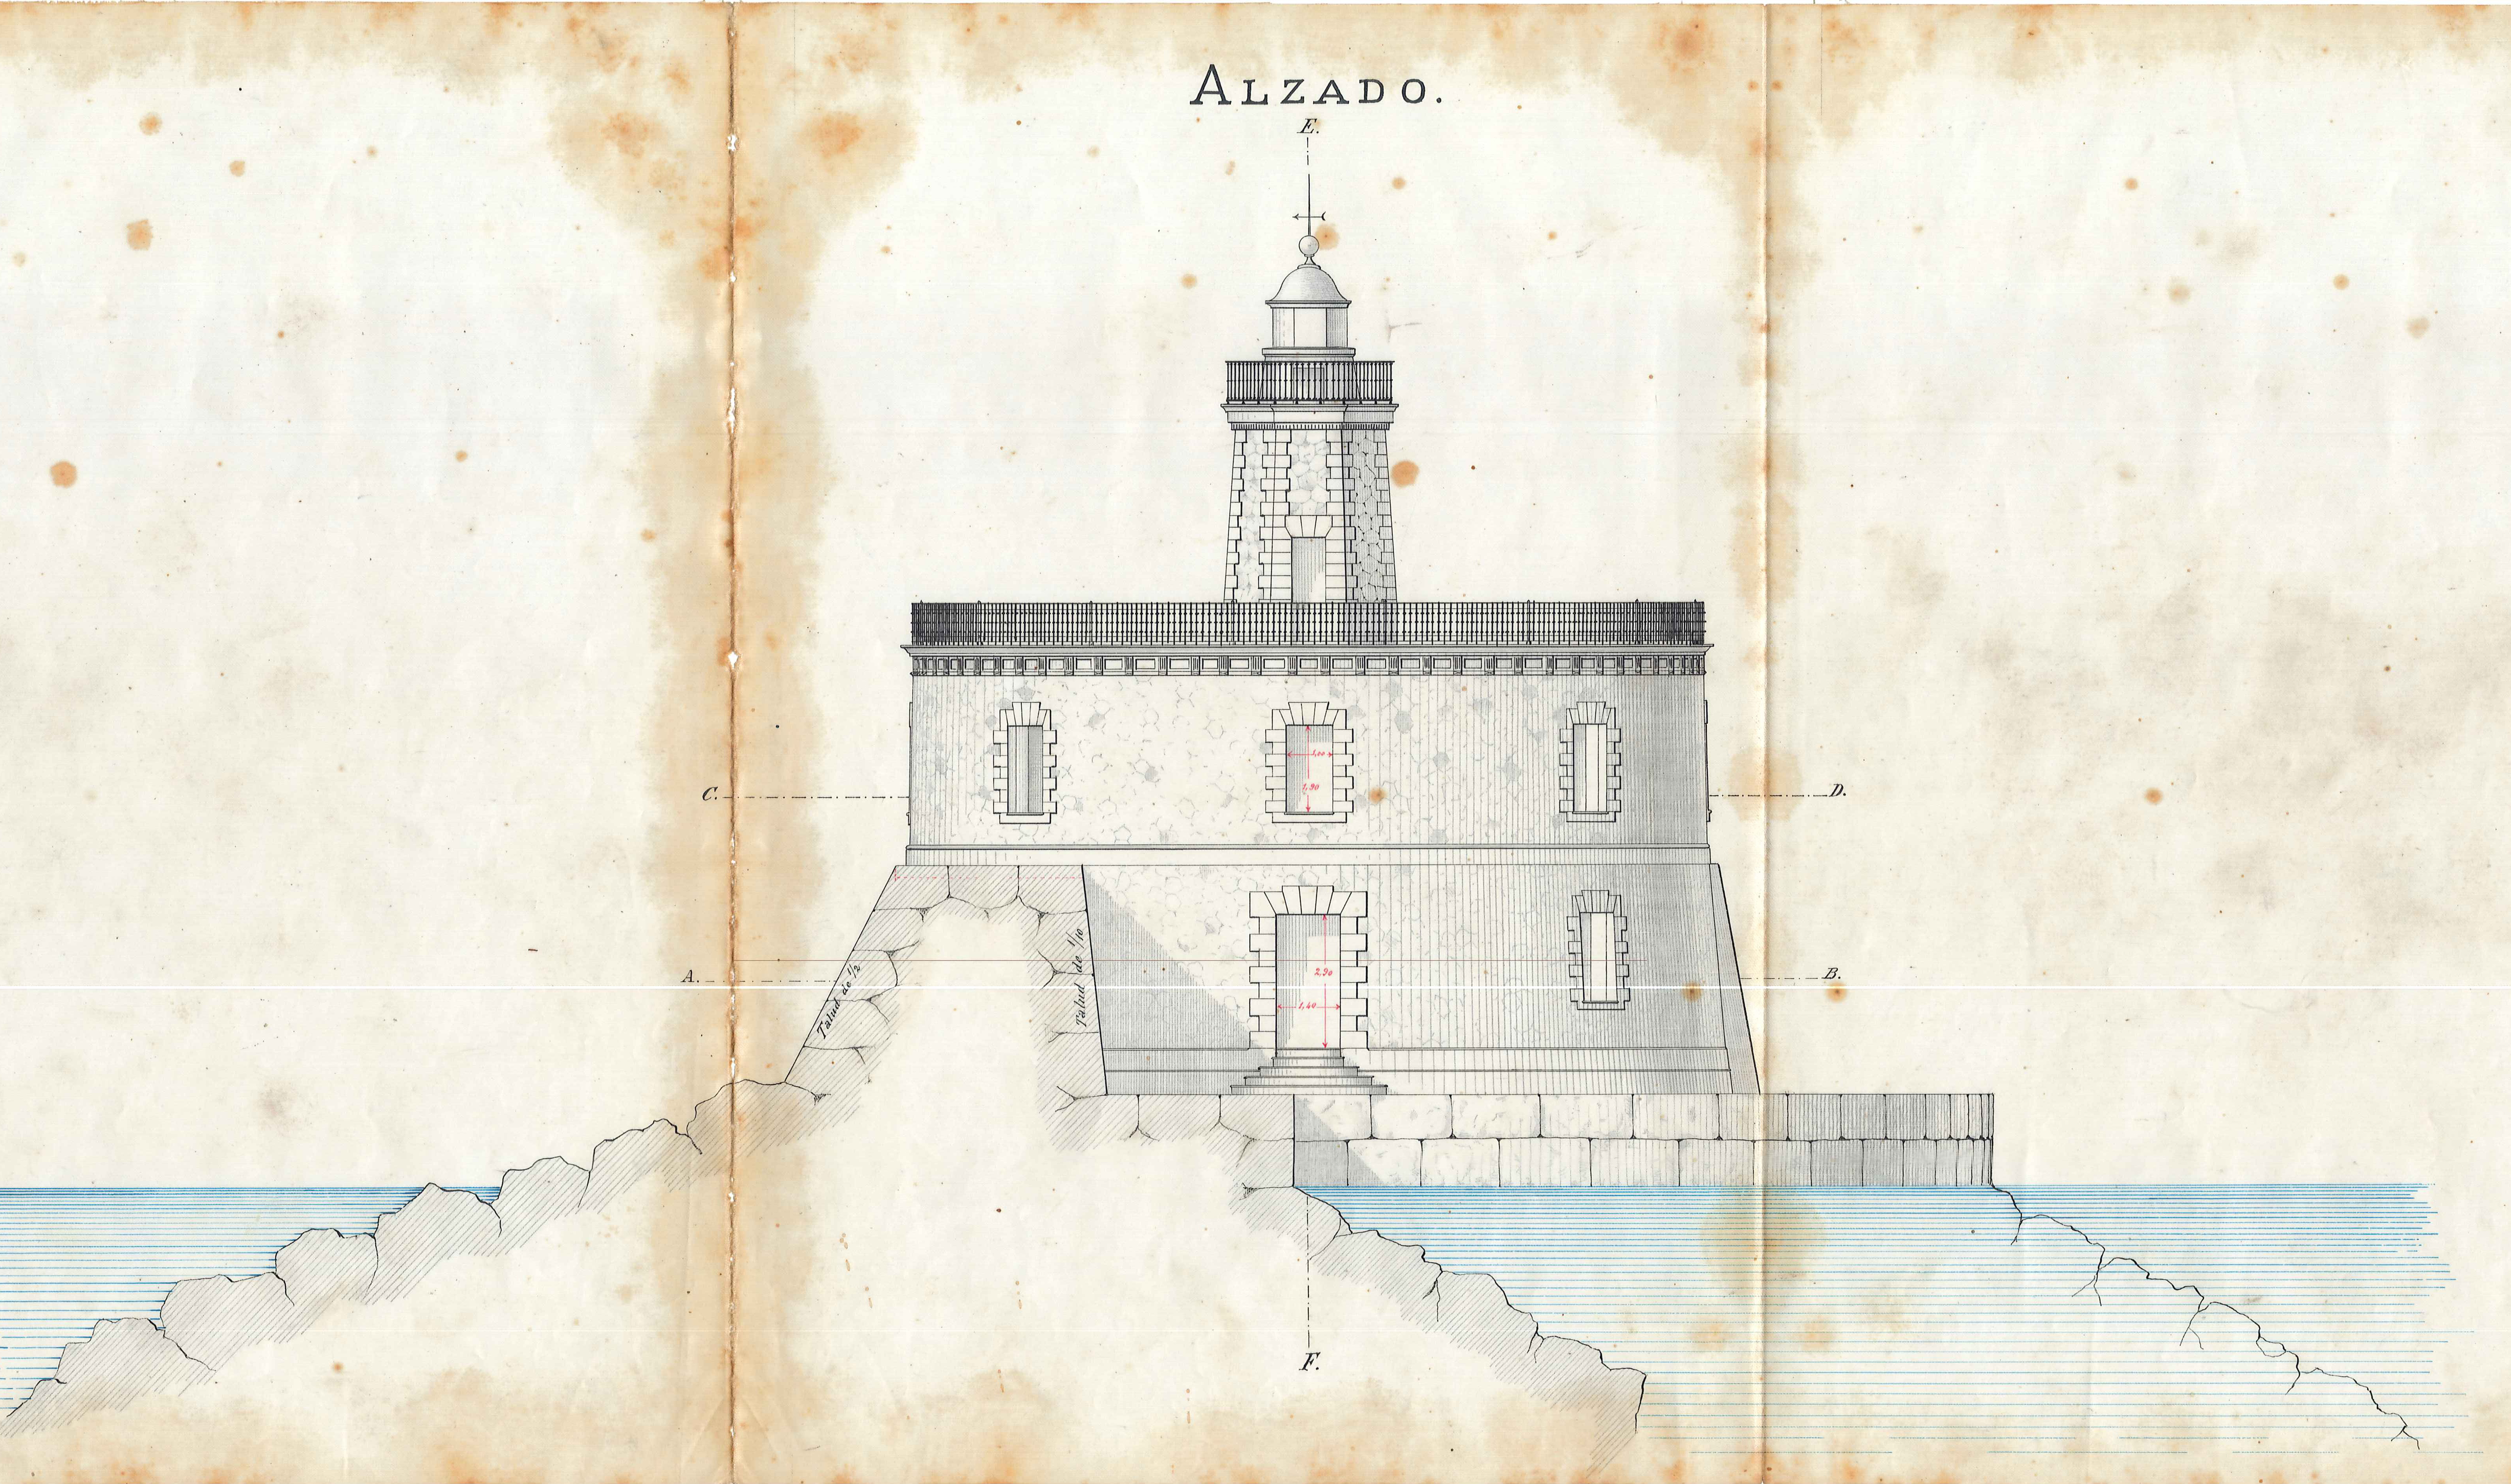 Die APB feiert den Internationalen Tag der Archive, indem sie das ursprüngliche Projekt für den Leuchtturm im Hafen von Palma vorstellt